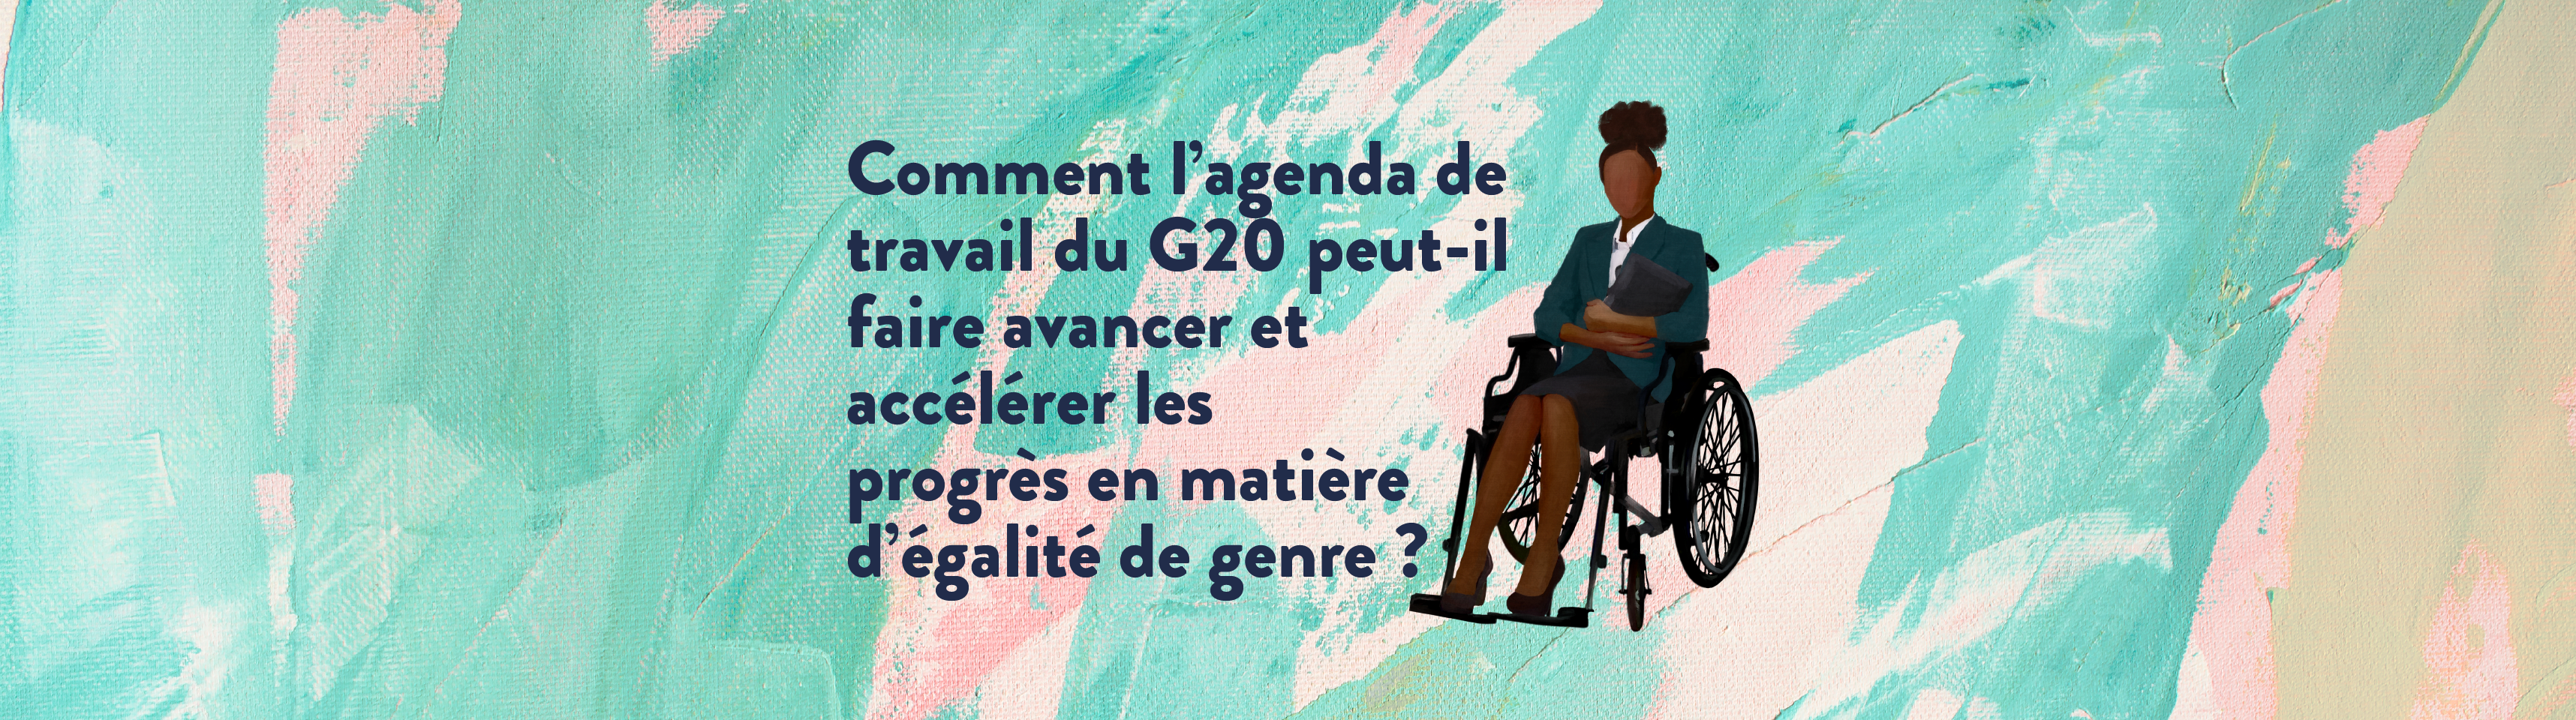 Comment l’agenda de travail du G20 peut-il faire avancer et accélérer les progrès en matière d’égalité de genre ? 